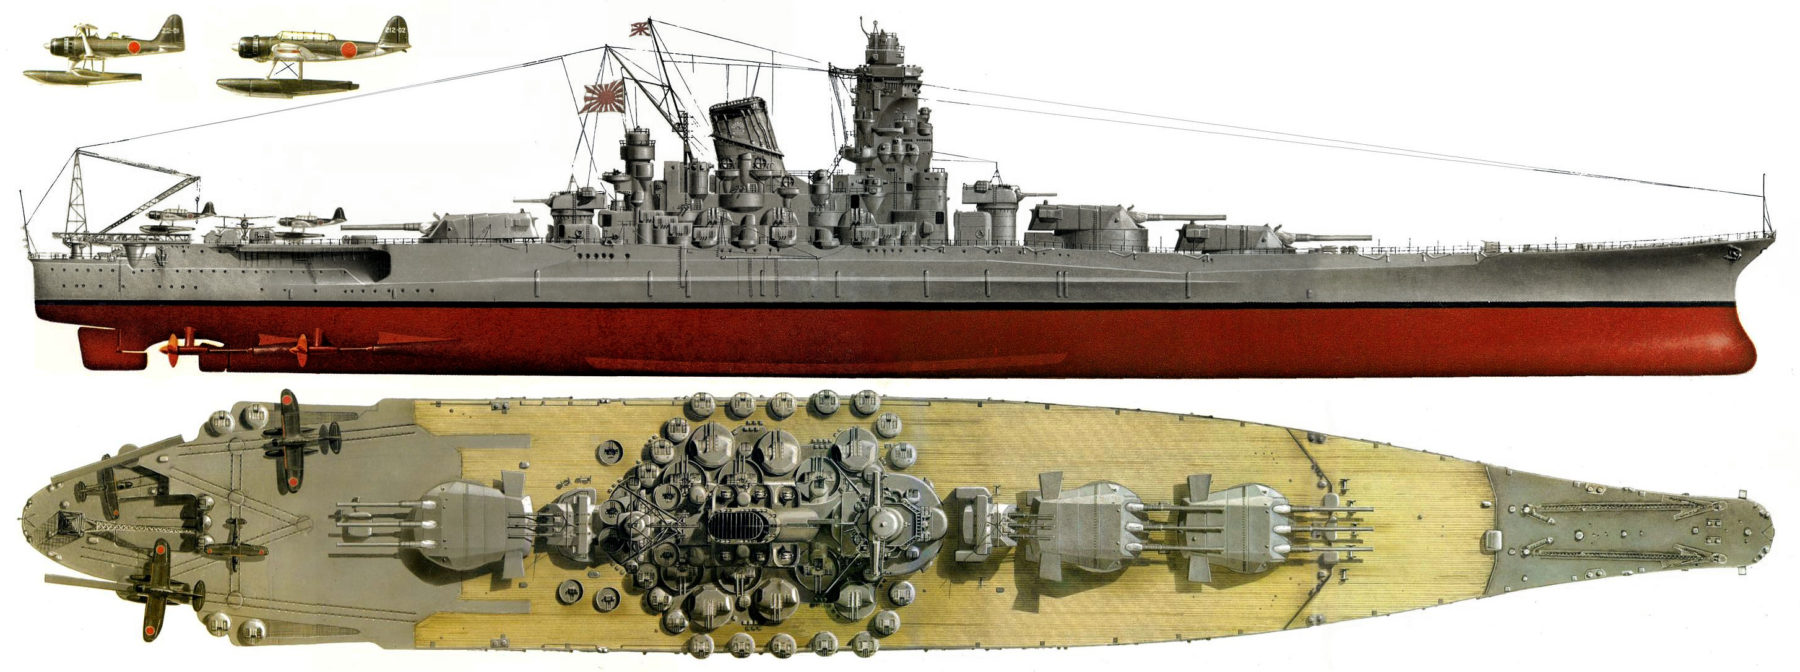 large illustration about the Yamato